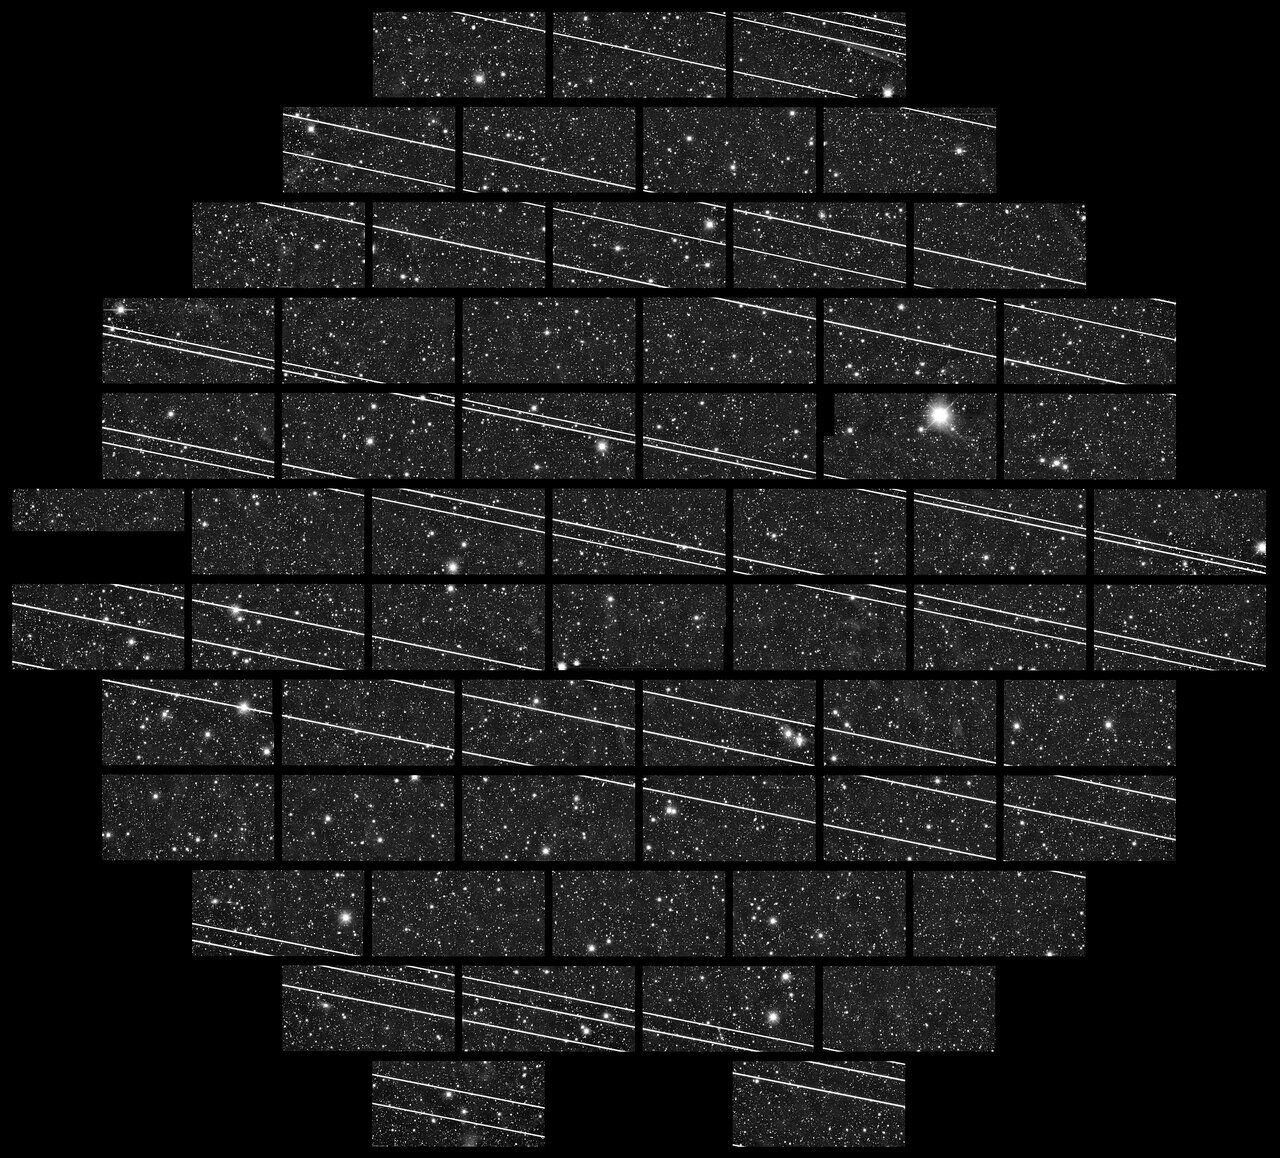 Uma vintena de satélites Starlink fotografados em novembro de 2019 no Observatório Interamericano Cerro Tololo (CTIO) pelos astrônomos Clara Martínez-Vázquez e Cliff Johnson.